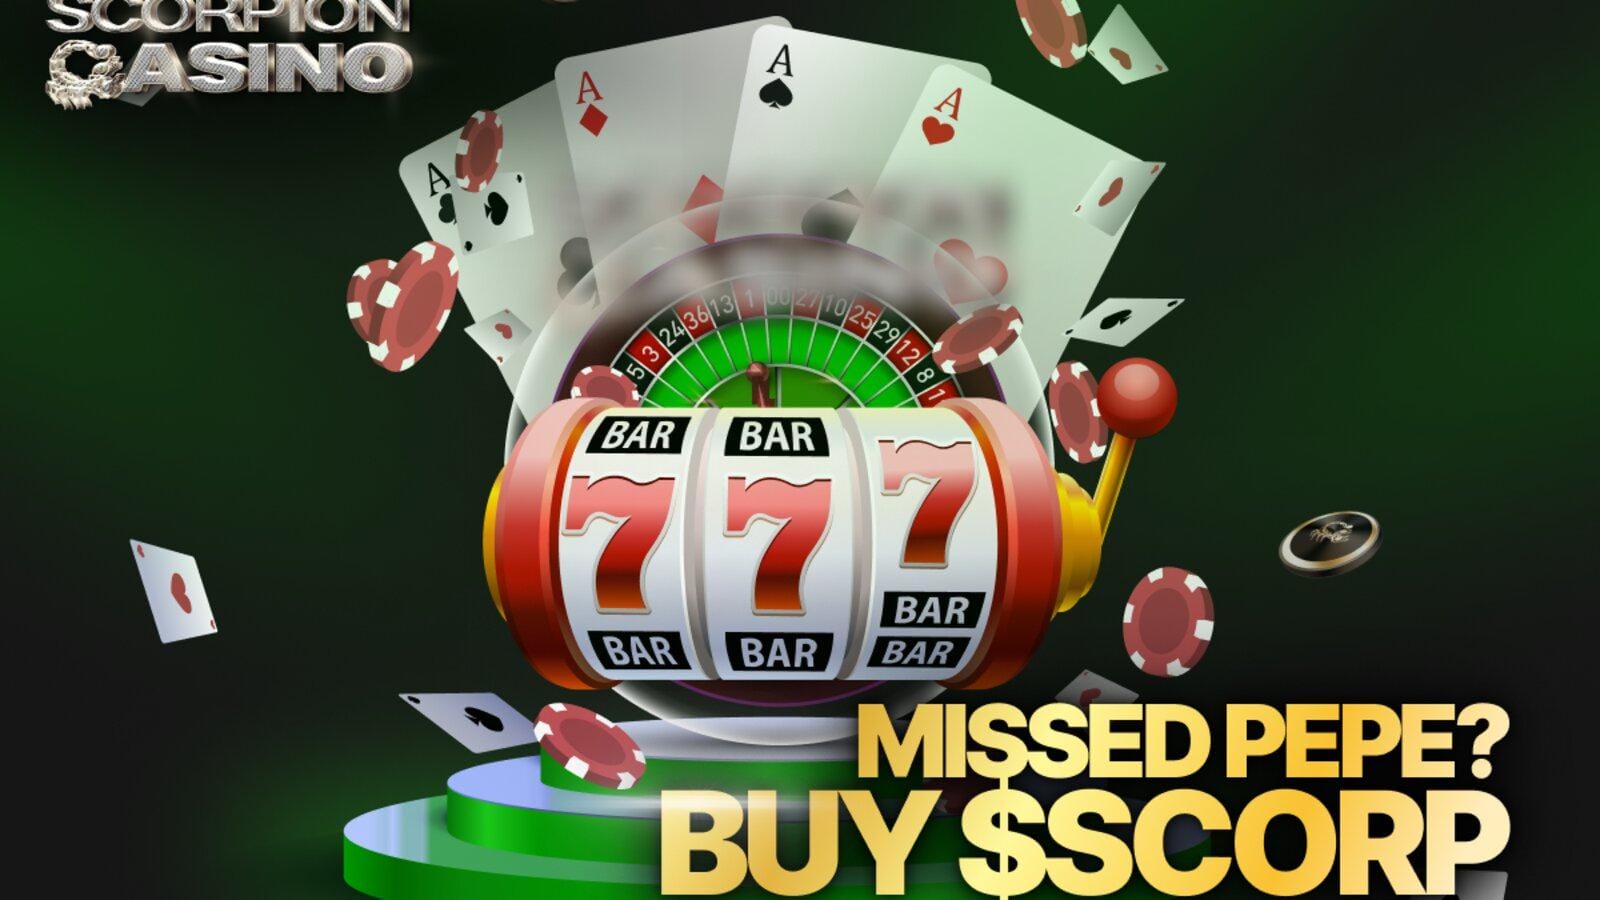 Premi giornalieri in criptovaluta – I pagamenti di Scorpion Casino diventano virali sui social media